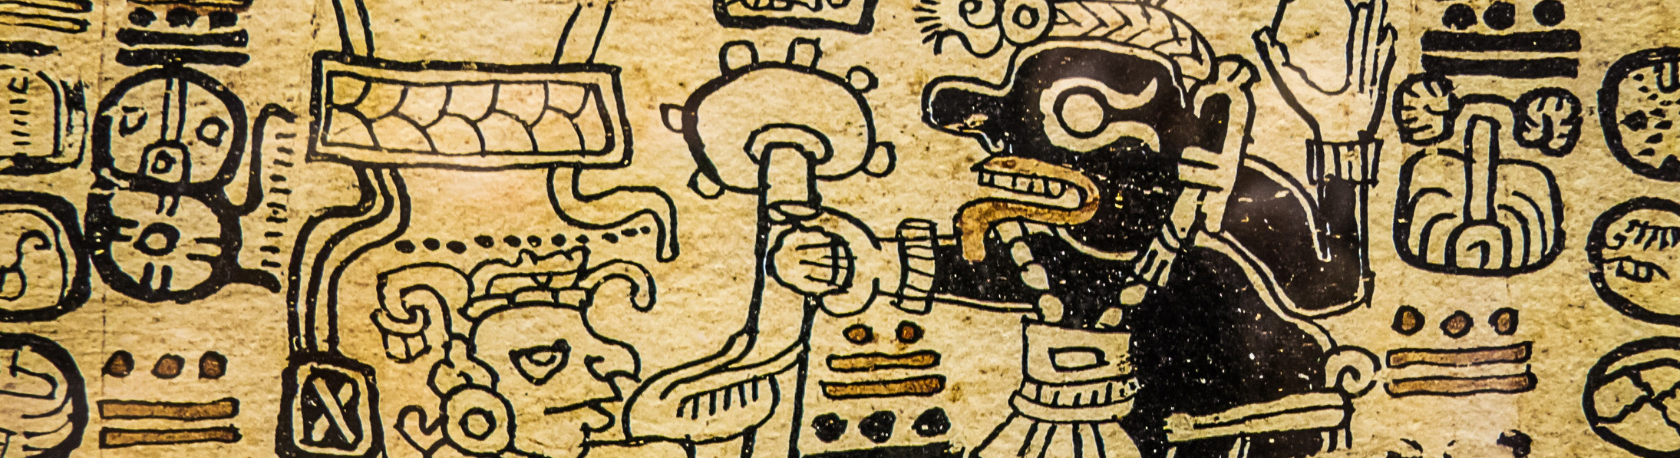 Easy Podcast: El sentido de lo divino en el mundo maya